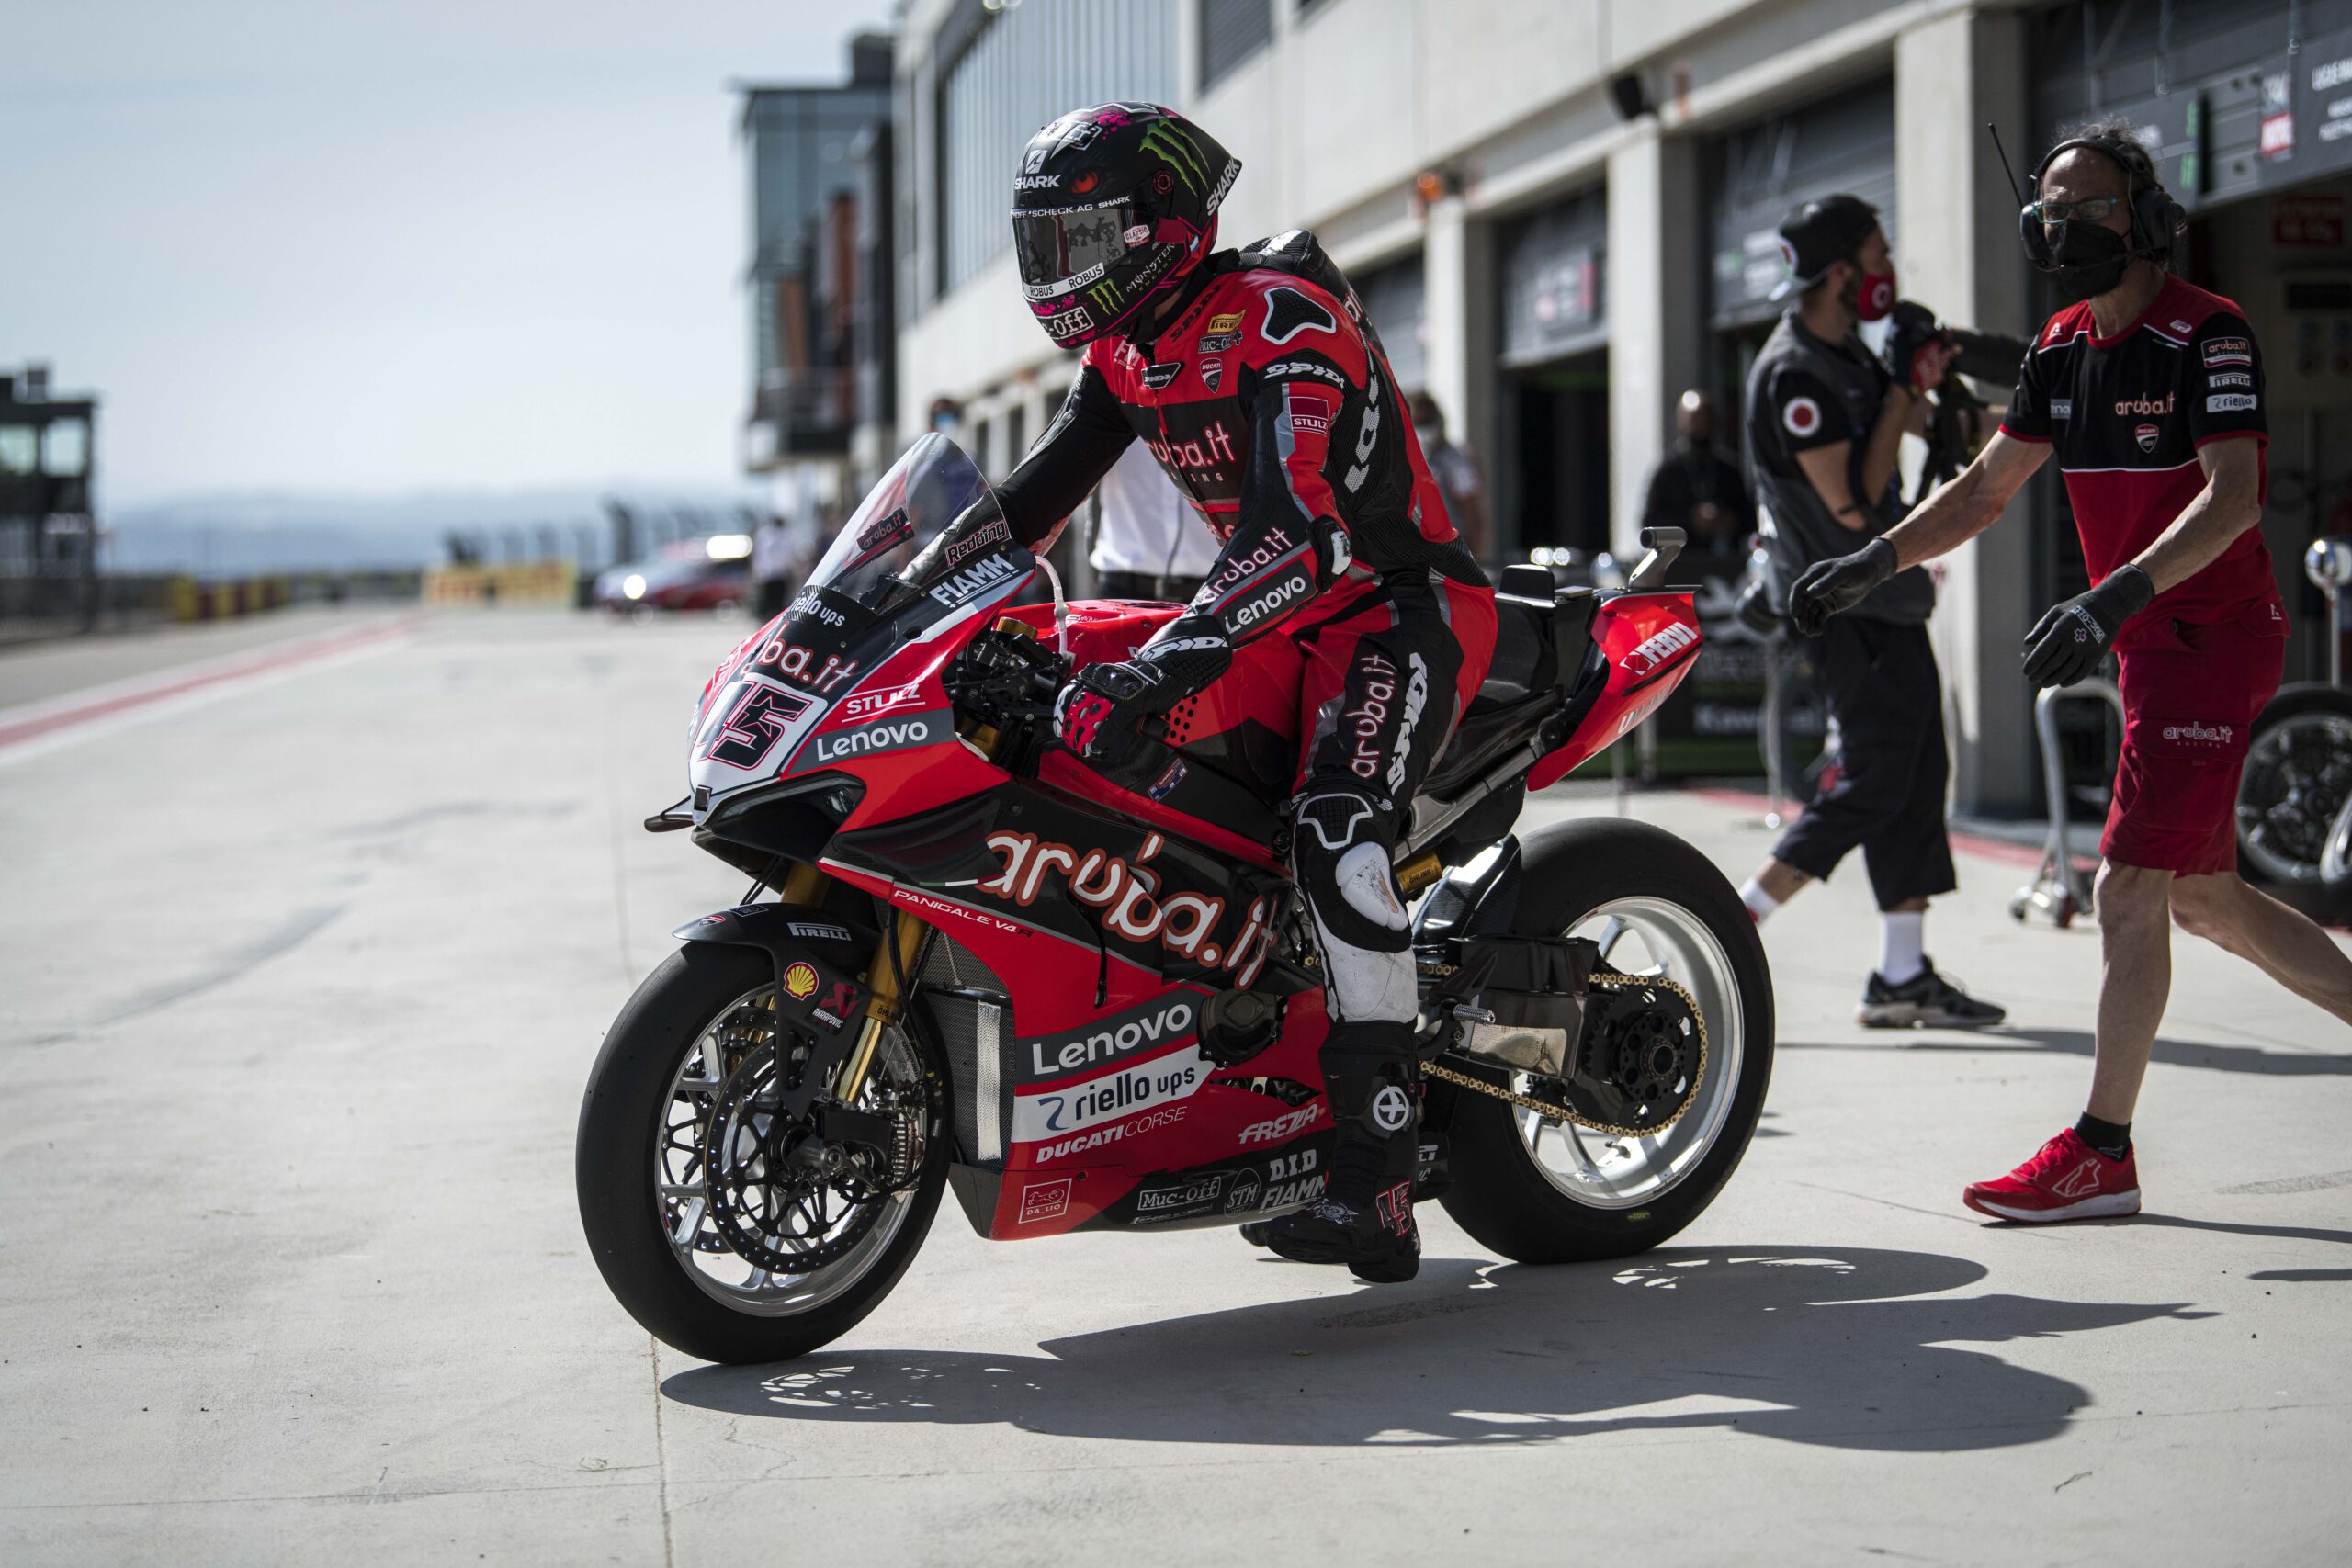 AUDES Group dresses the Aruba.it Racing – Ducati Team